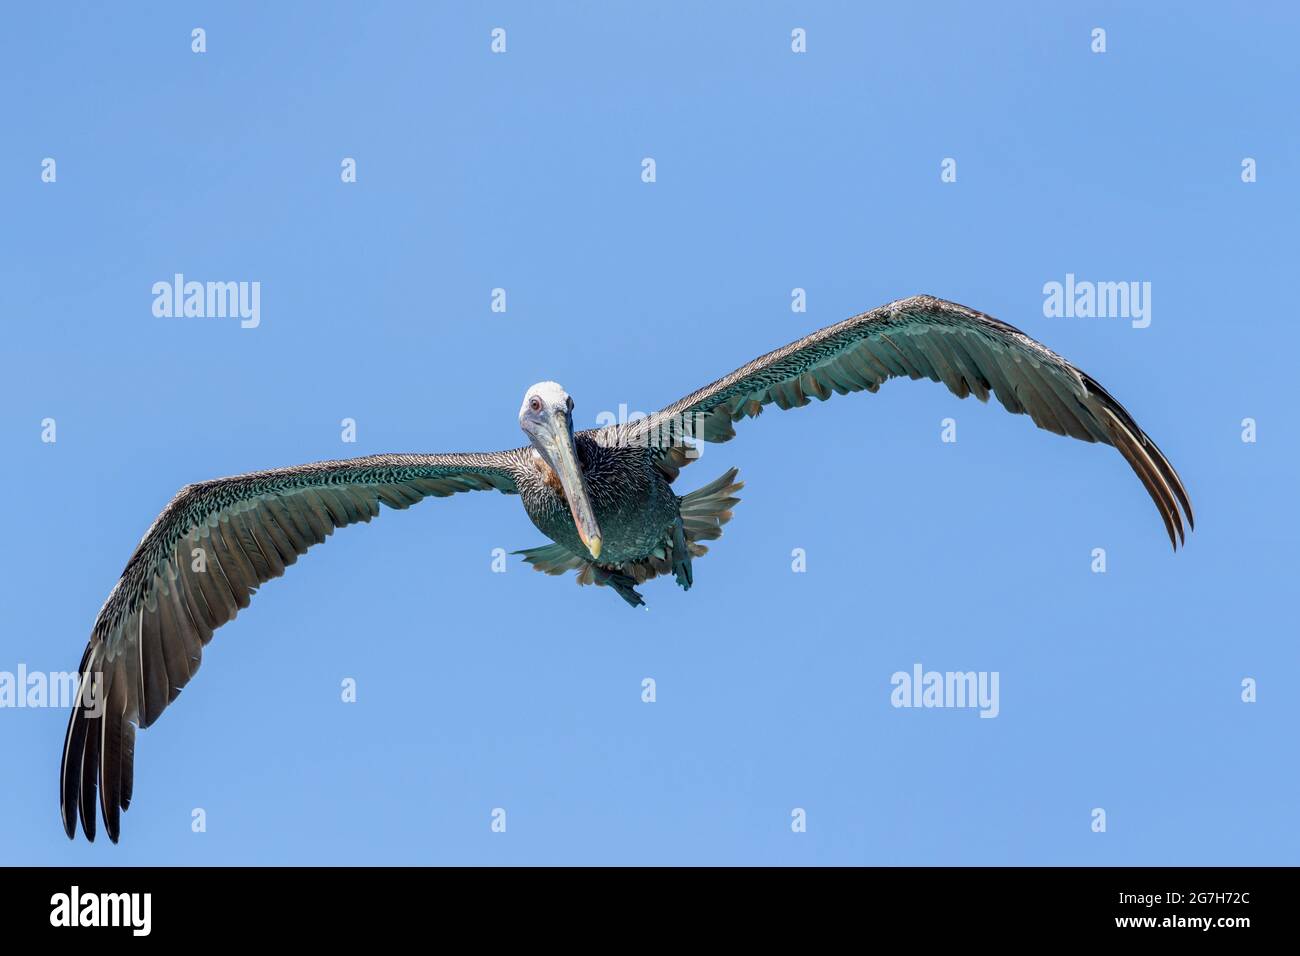 Pélican brun (Pelecanus occidentalis) volant contre le ciel bleu, regardant vers le bas pour les poissons, Bonaire, Antilles néerlandaises. Banque D'Images